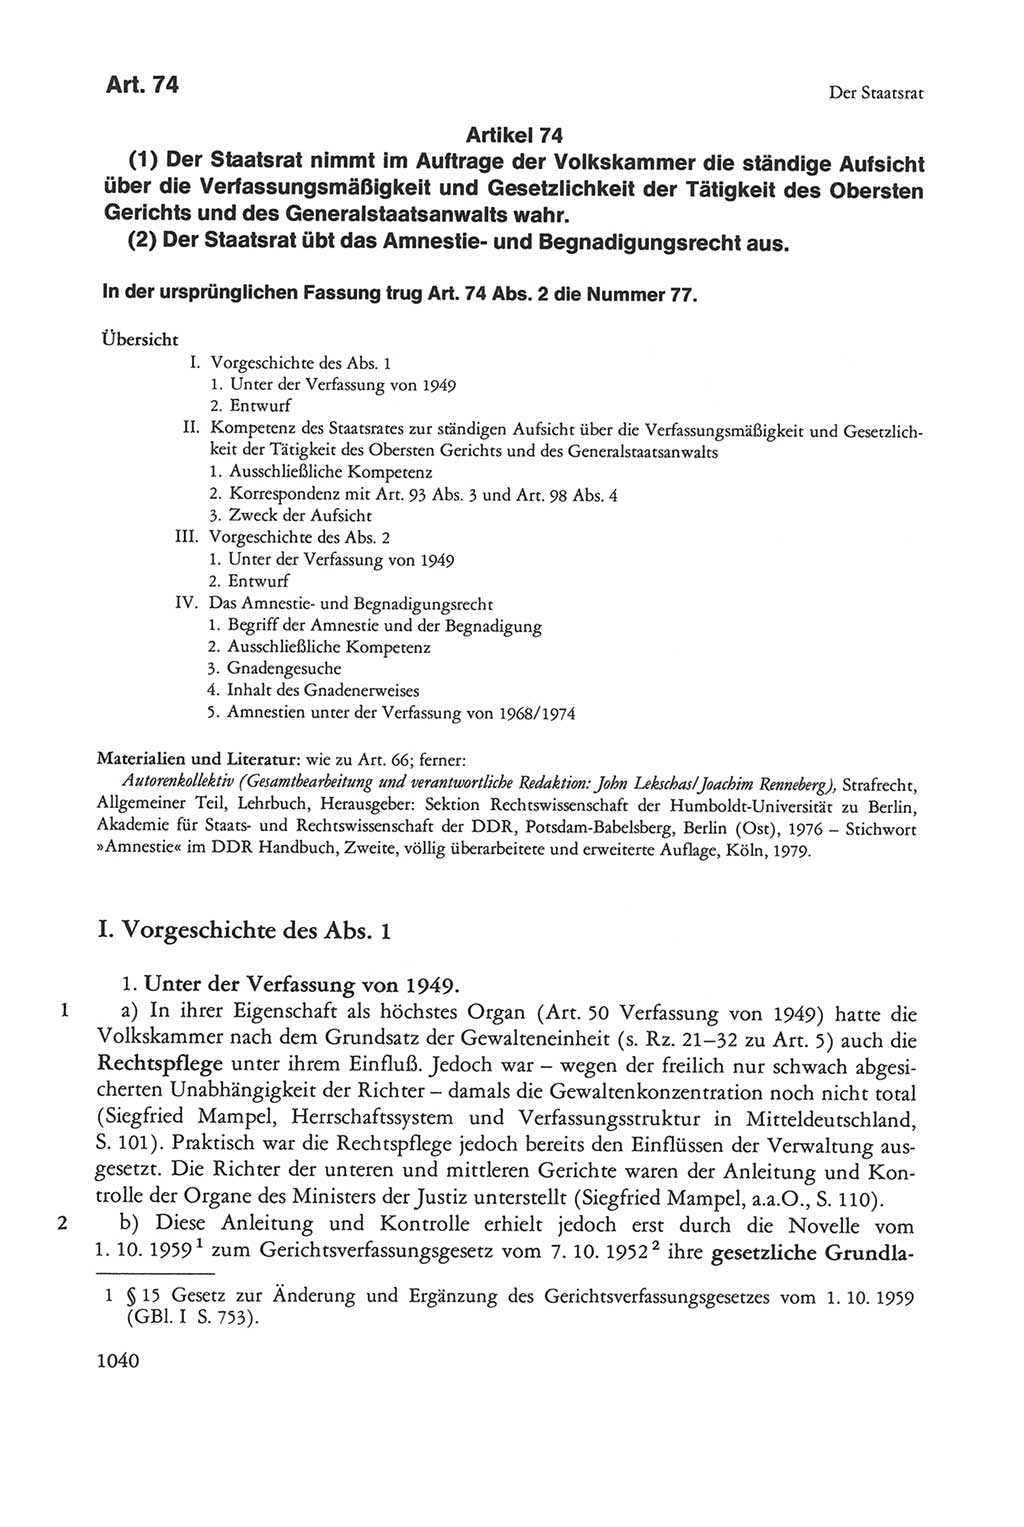 Die sozialistische Verfassung der Deutschen Demokratischen Republik (DDR), Kommentar mit einem Nachtrag 1997, Seite 1040 (Soz. Verf. DDR Komm. Nachtr. 1997, S. 1040)